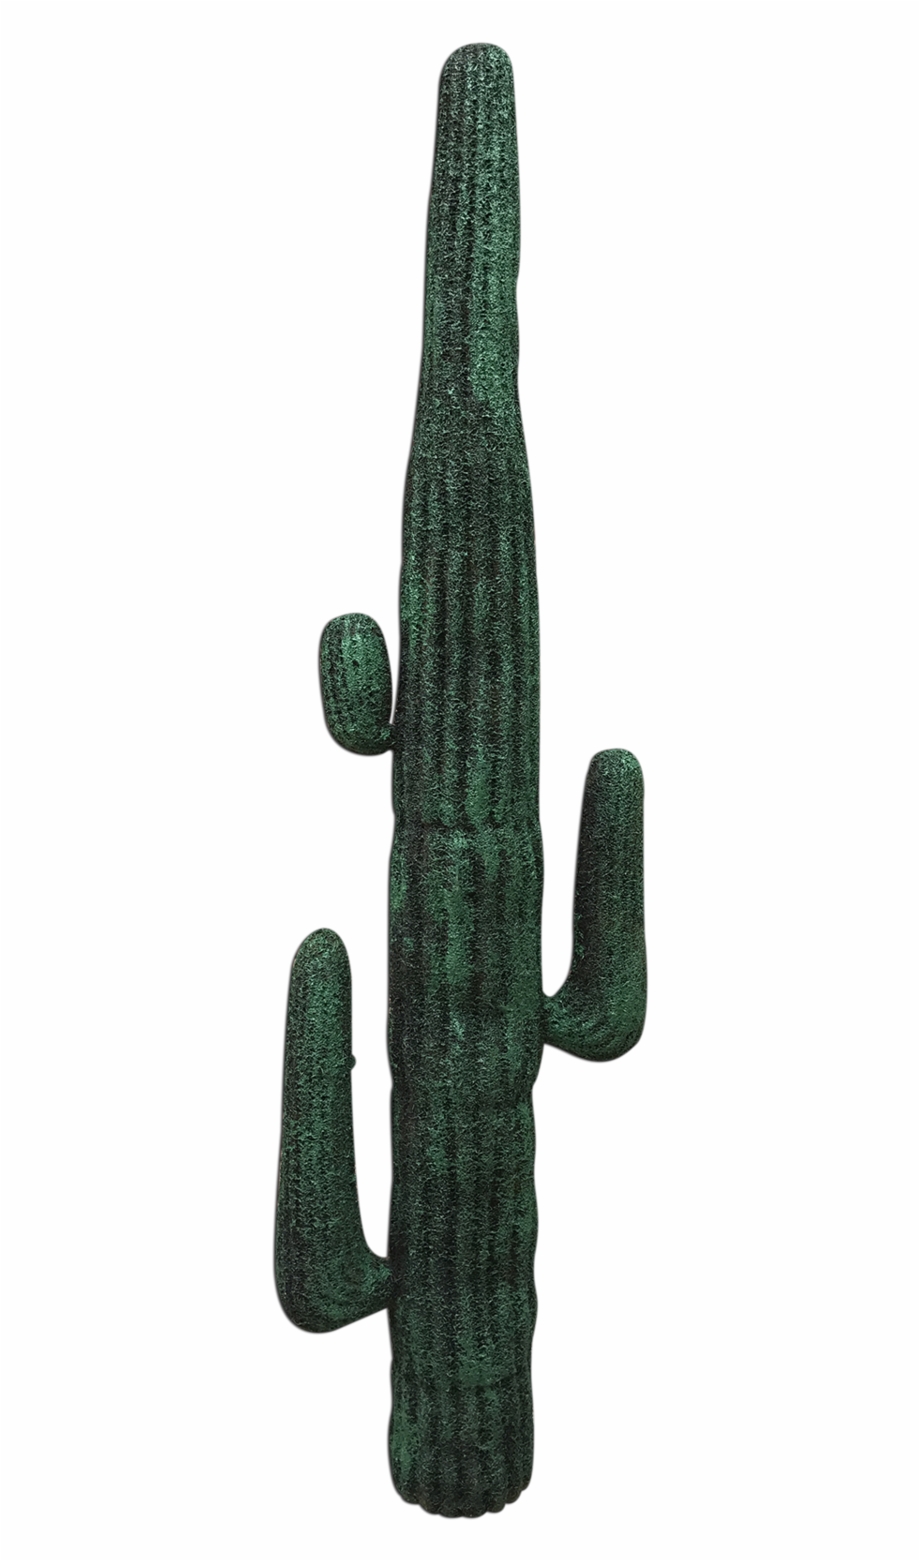 Cactus San Pedro Cactus